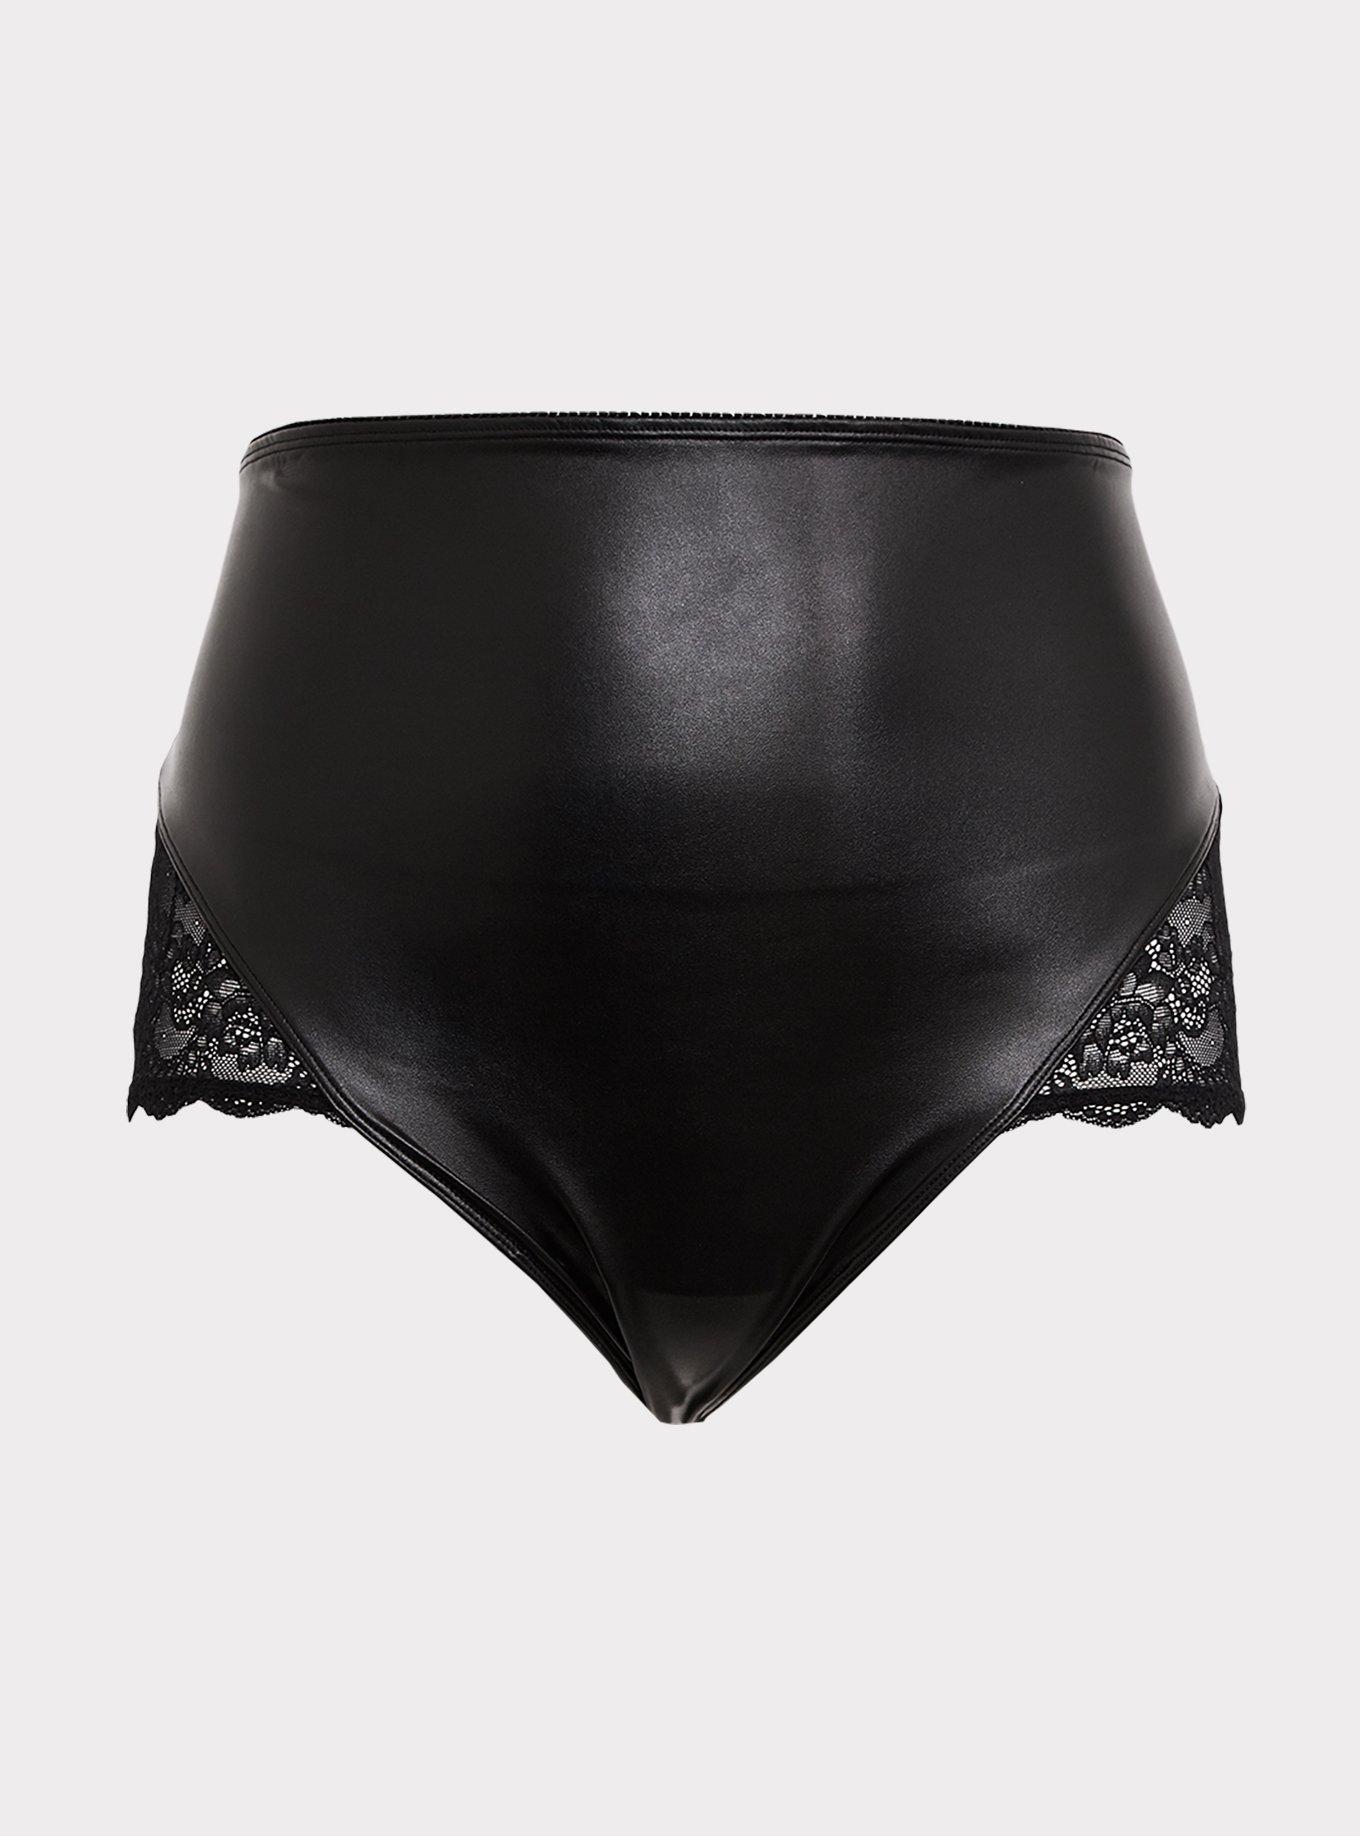 Plus Size - Black Faux Pleather & Lace Lace-Up High Waist Panty